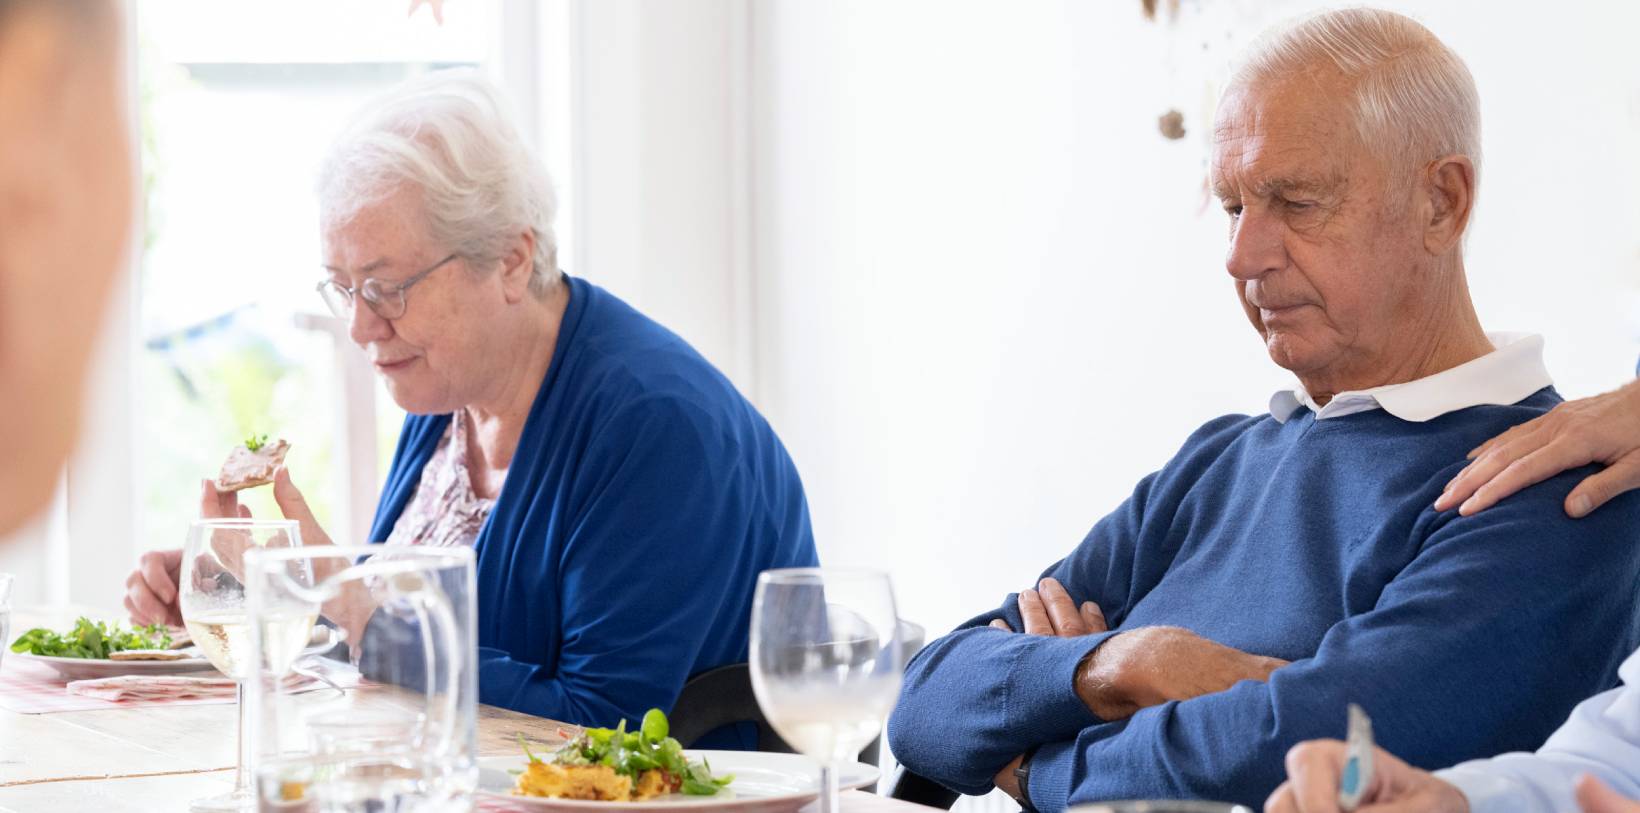 Een afbeelding van een dagbesteding waarbij je twee oudere mensen ziet eten aan een tafel